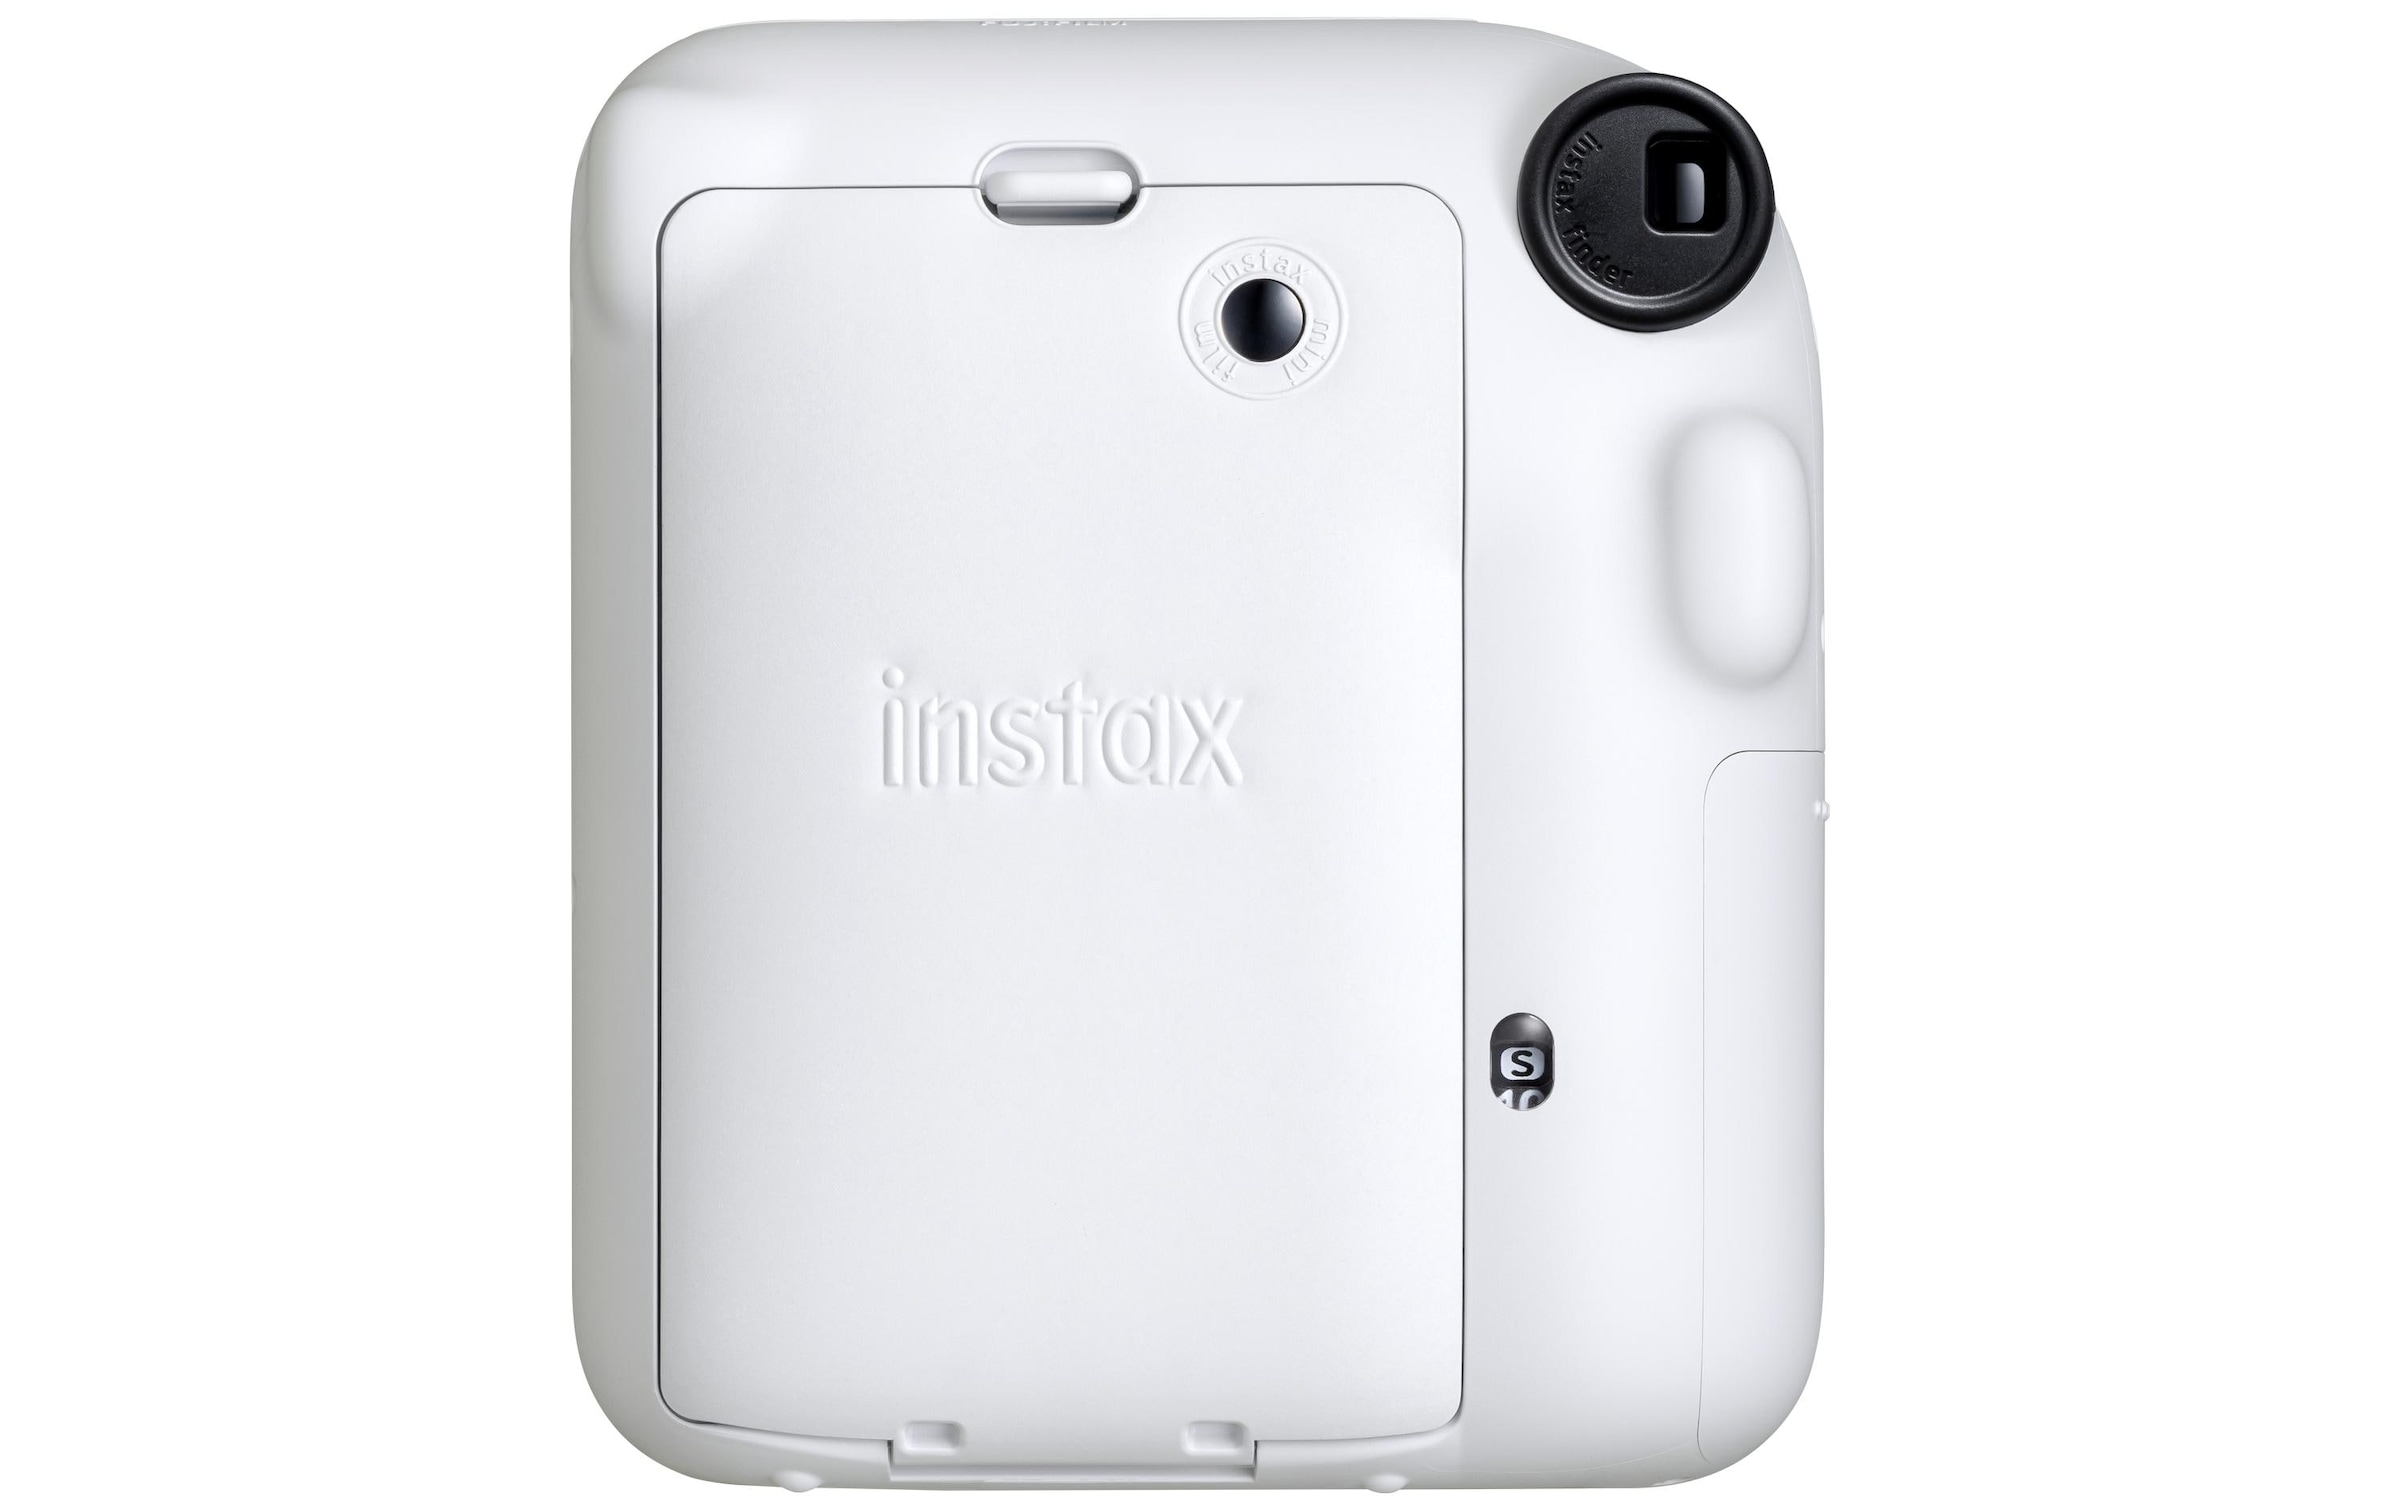 FUJIFILM Kompaktkamera »Instax Mini 12«